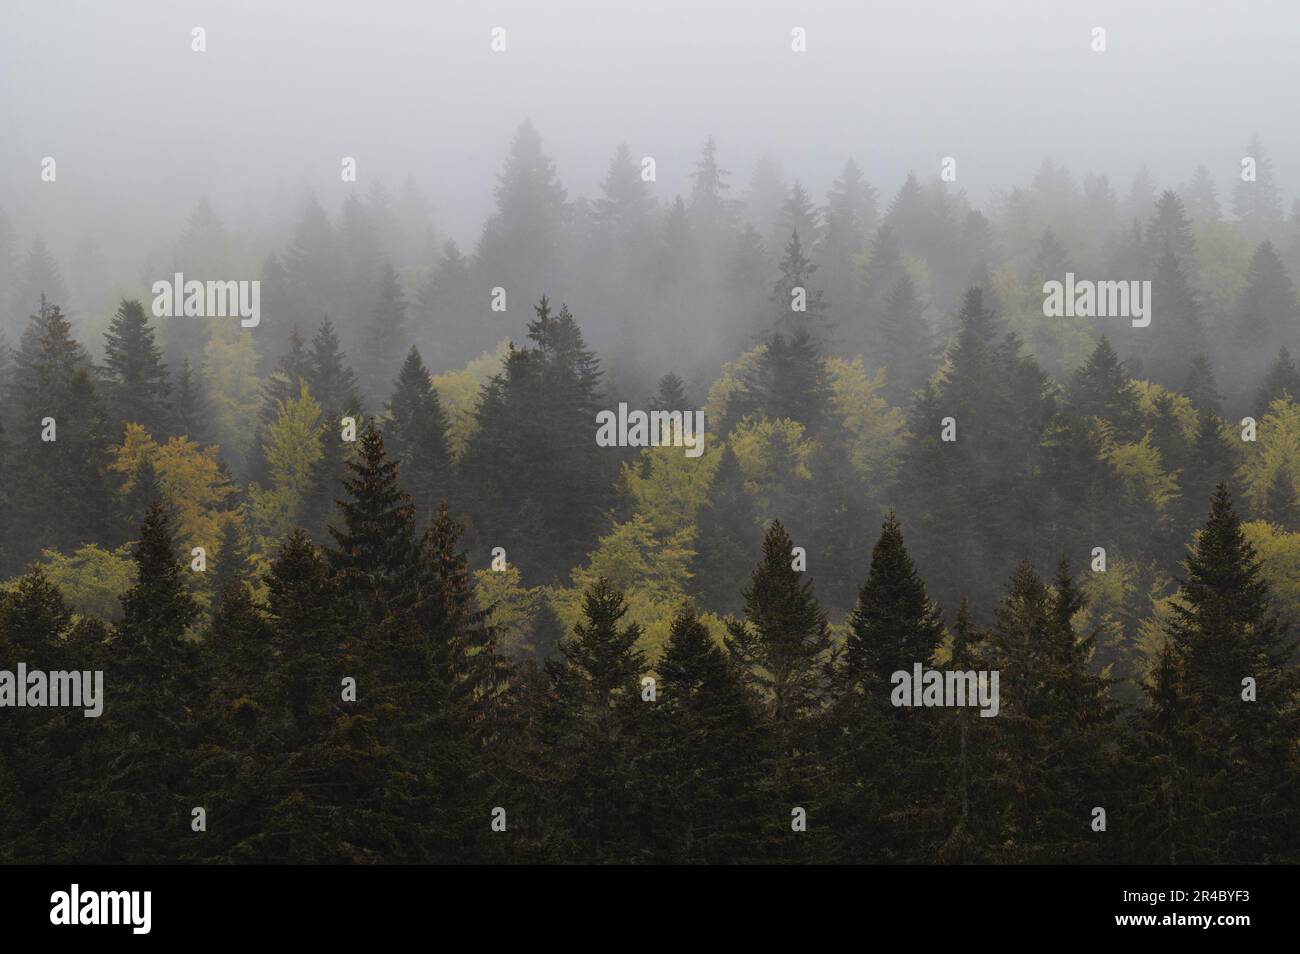 Ein üppiger Wald aus Kiefern inmitten einer nebligen Atmosphäre. Stockfoto